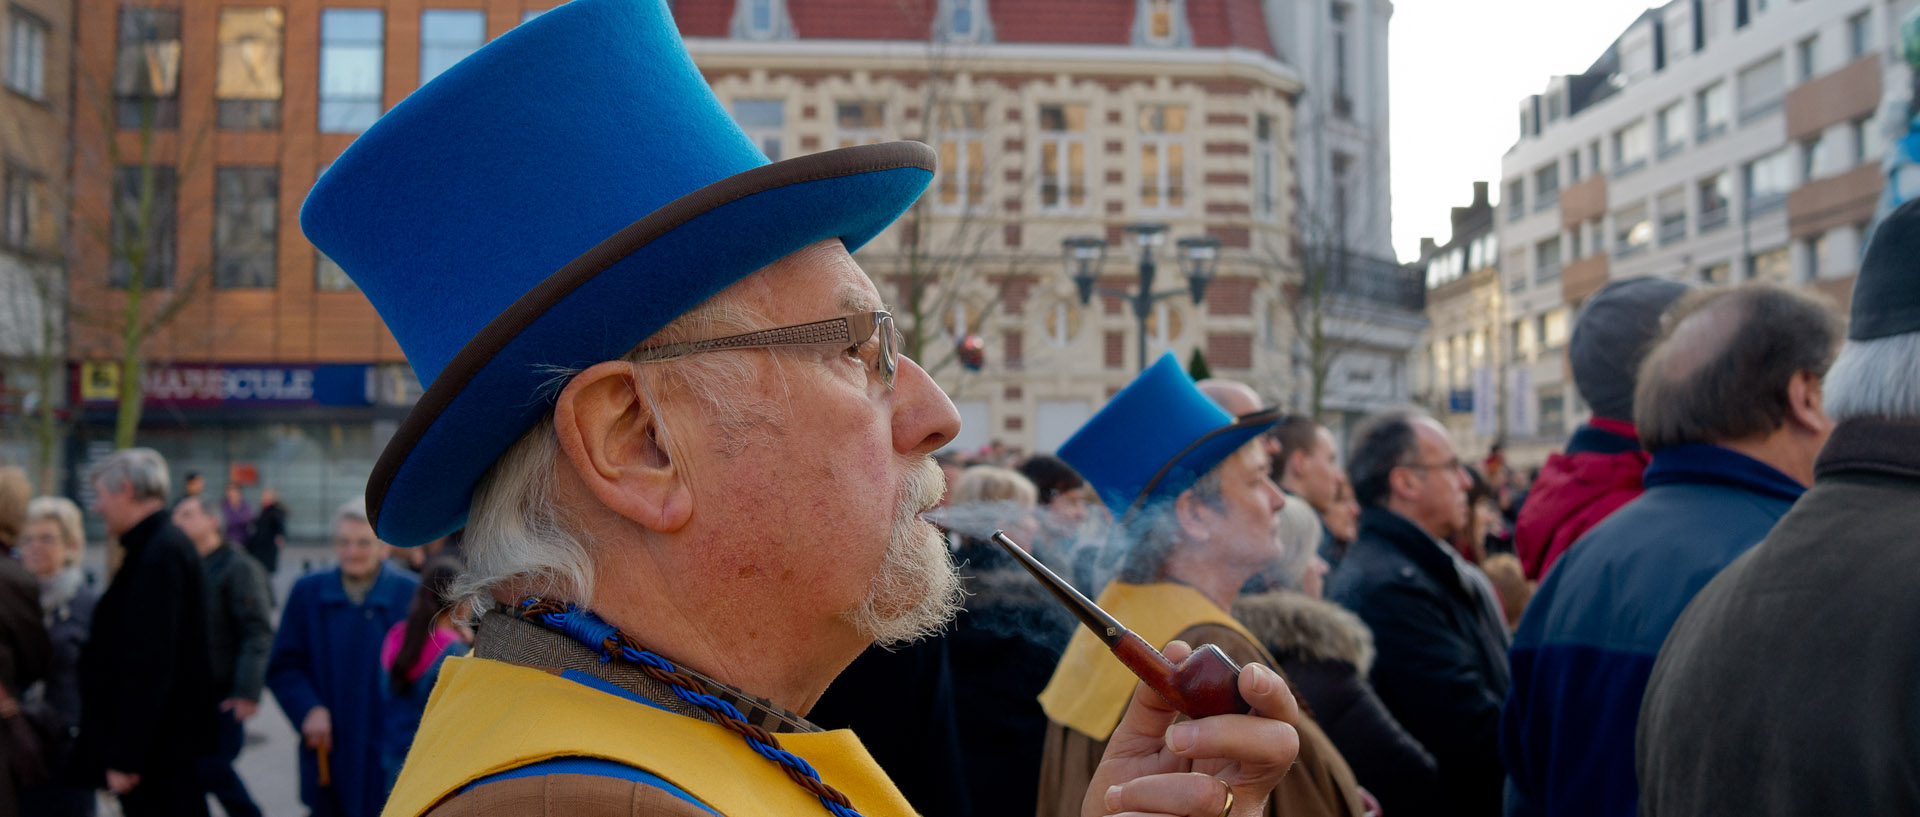 Homme avec un haut de forme bleu et une pipe, au carnaval de Tourcoing, place Victor Hassebroucq.